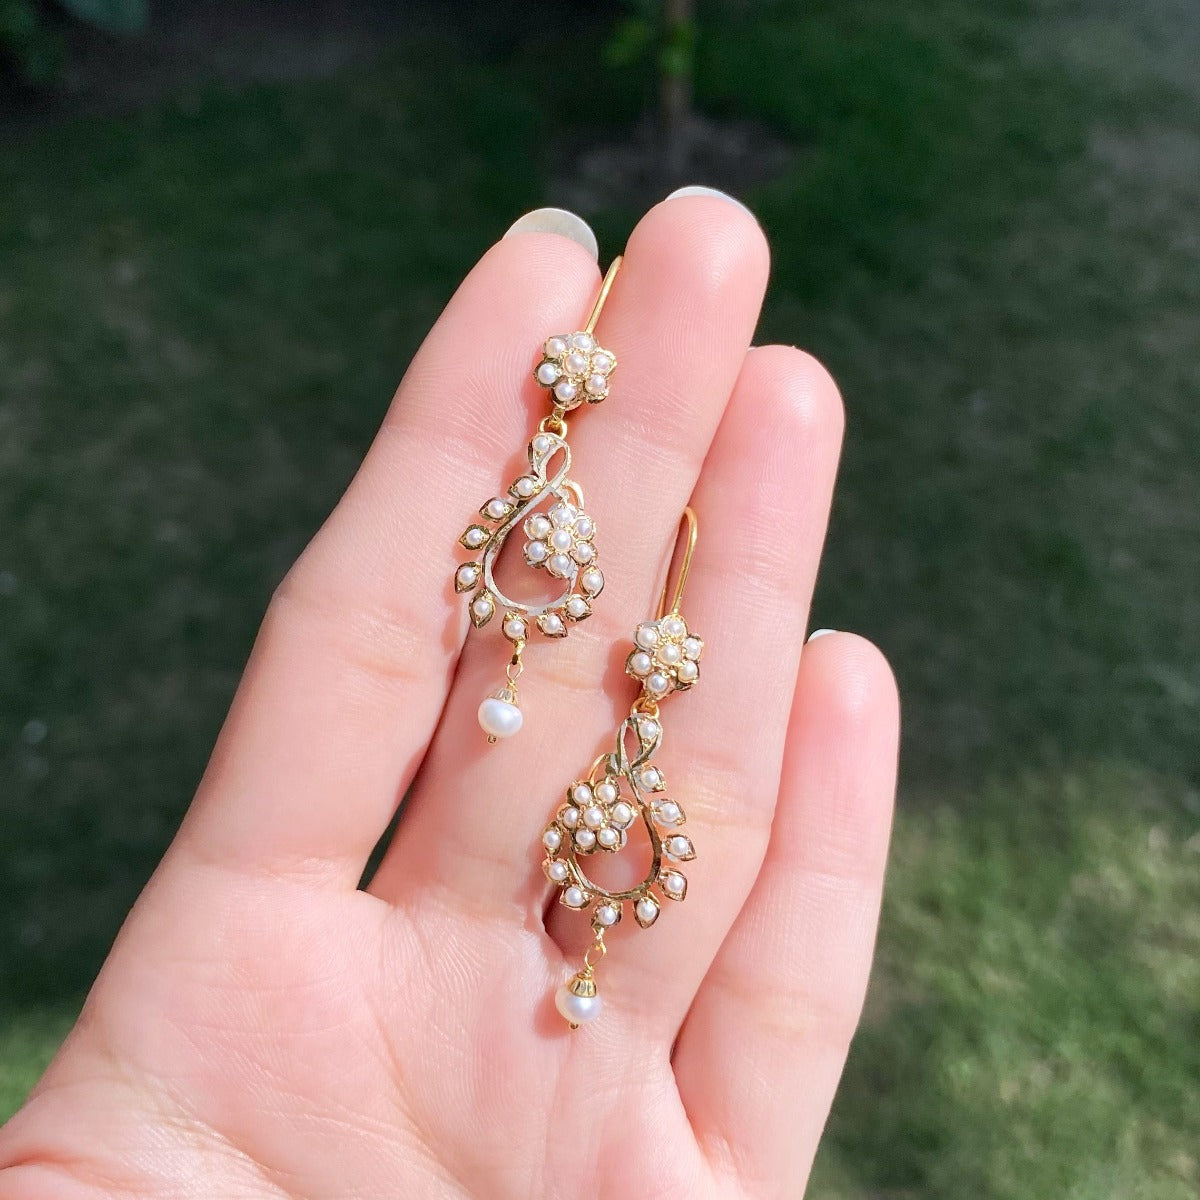 22 carat gold earrings for women under 50000